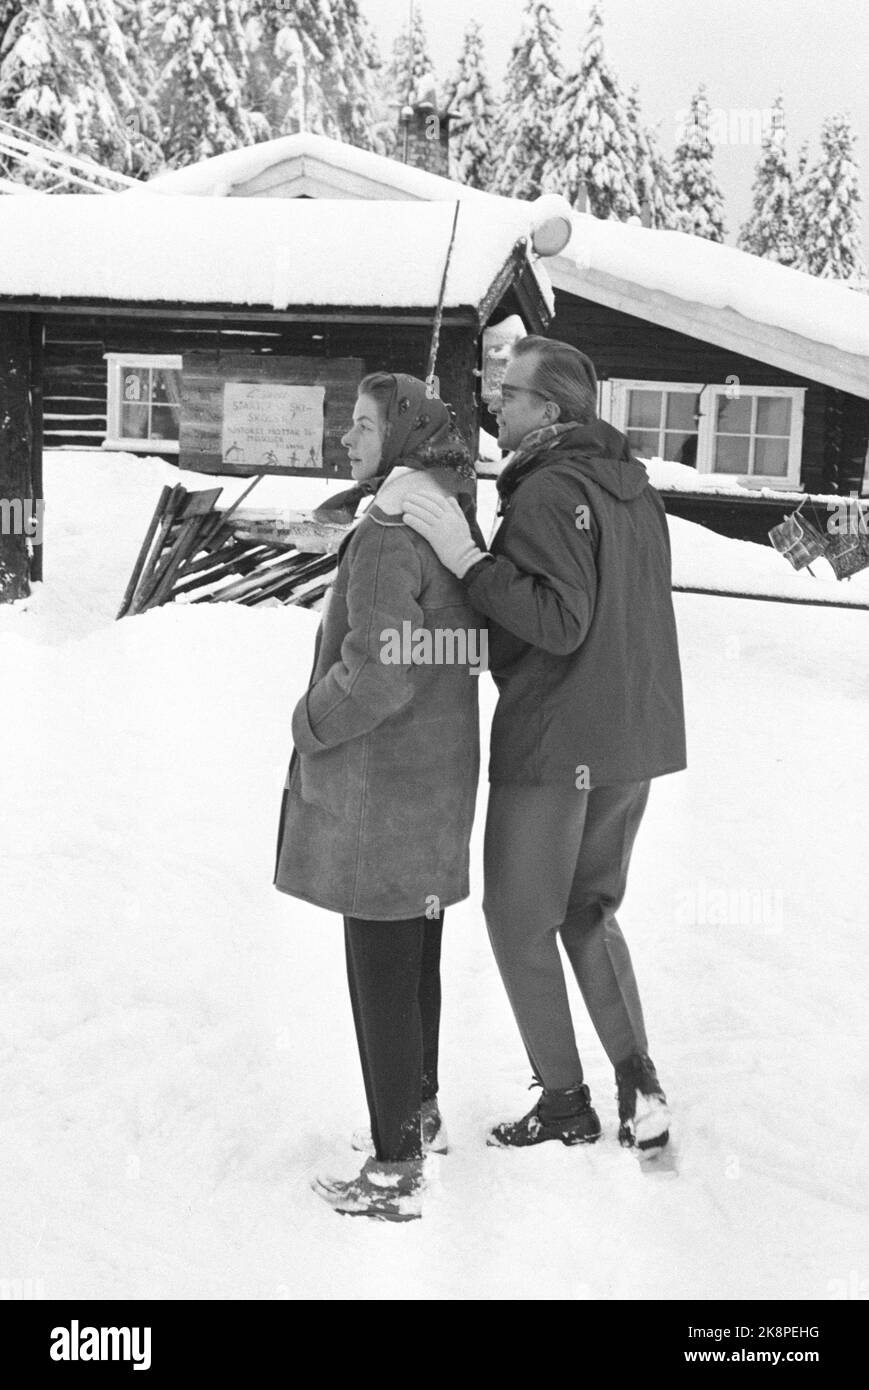 Oslo 19600109. L'acteur Ingrid Bergman avec son mari Lars Schmidt et les enfants Ingrid, Isabella et Robertino qu'elle a avec Roberto Rosselini est venu en vacances dans le bon hiver norvégien à Holmenkollen. Bergman n'a pas aimé les médias donc elle est restée la plupart du temps à l'intérieur. C'était sa première visite en Norvège depuis le procès des célébrités contre Roberto Rosselini. Dans un bref instant, Ingrid Bergman a été convaincue par son mari Lars Schmidt et était prête à poser pour les photographes. Photo: Storløkken / NTB Banque D'Images